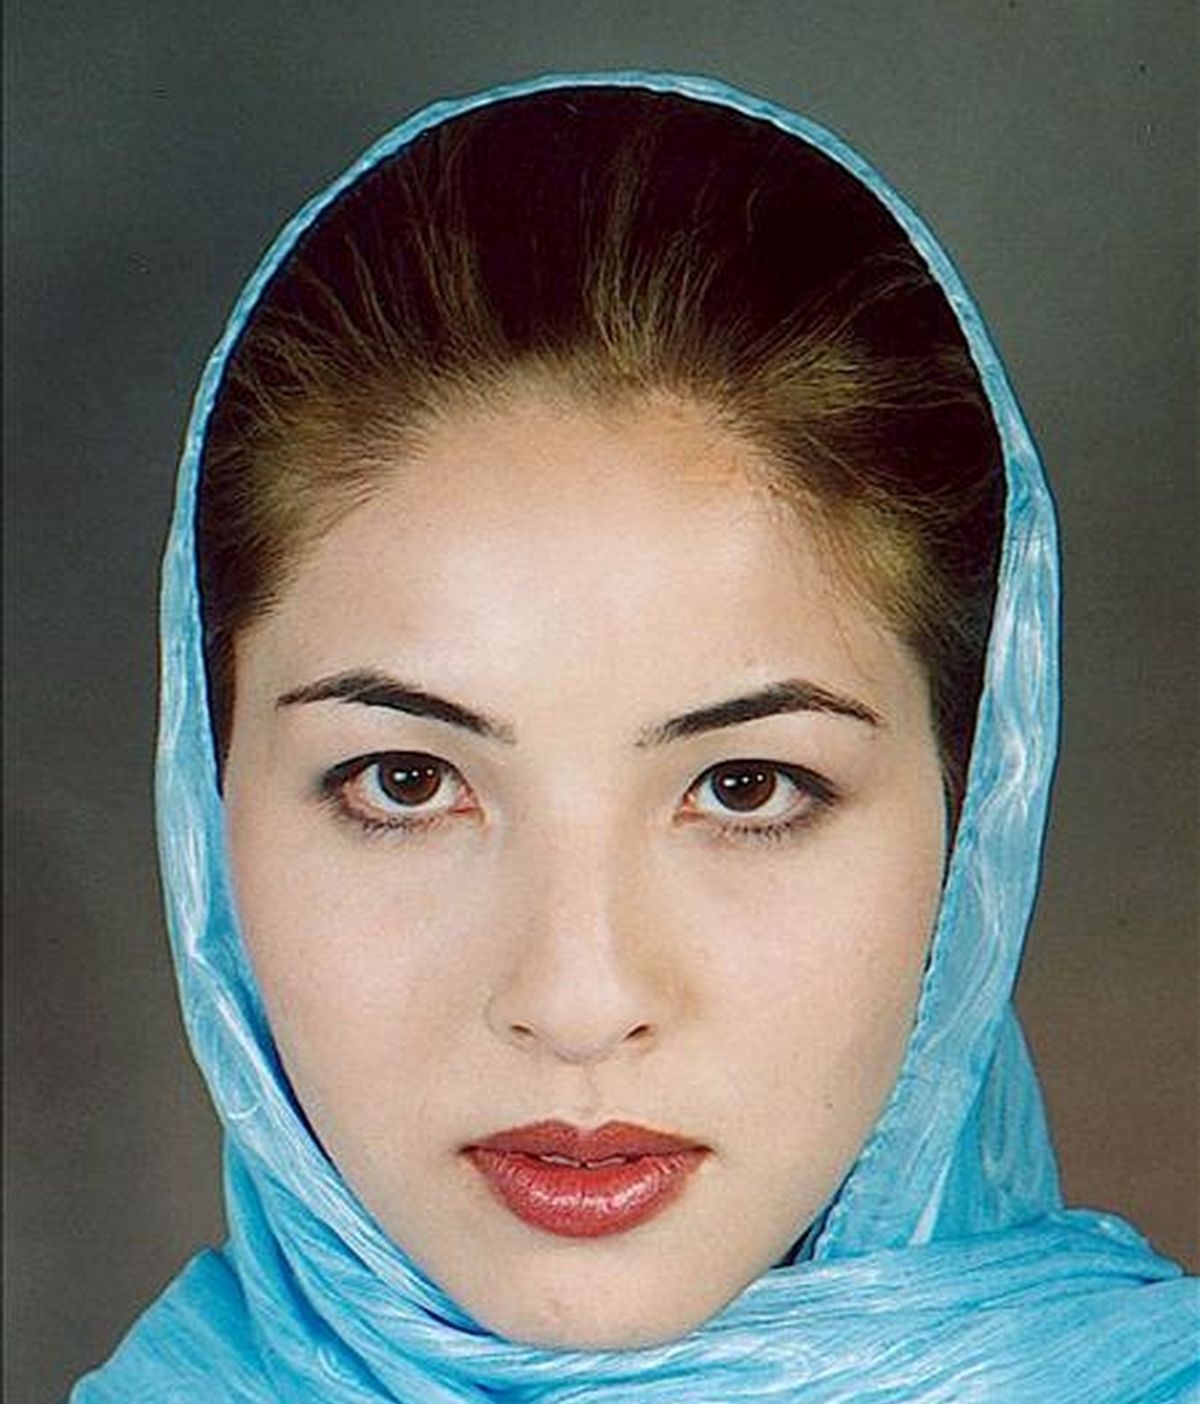 Fotografía cedida por la Asociación Nacional de Fotógrafos de Prensa de la periodista iraní-estadounidense, Roxana Saberi, quien fue detenida a principios de febrero acusada de haber cometido actividades de espionaje por un juzgado revolucionario de Irán. EFE/Archivo